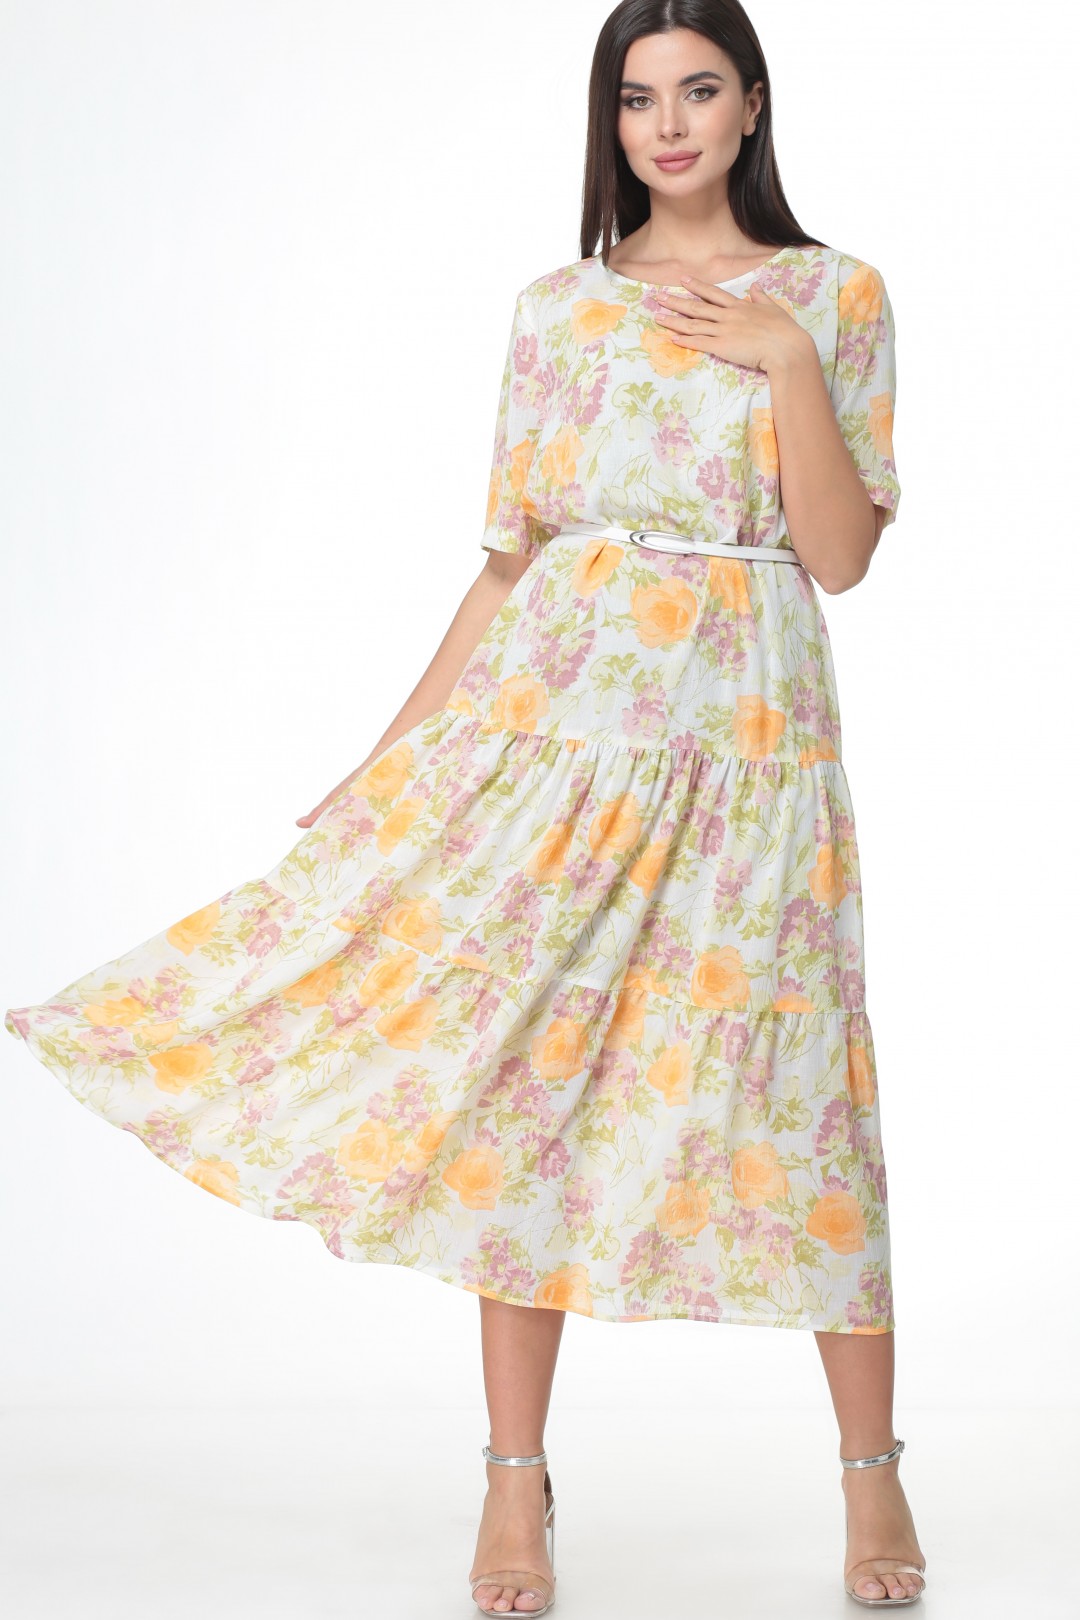 Платье Angelina & Company 514ж желтые цветы